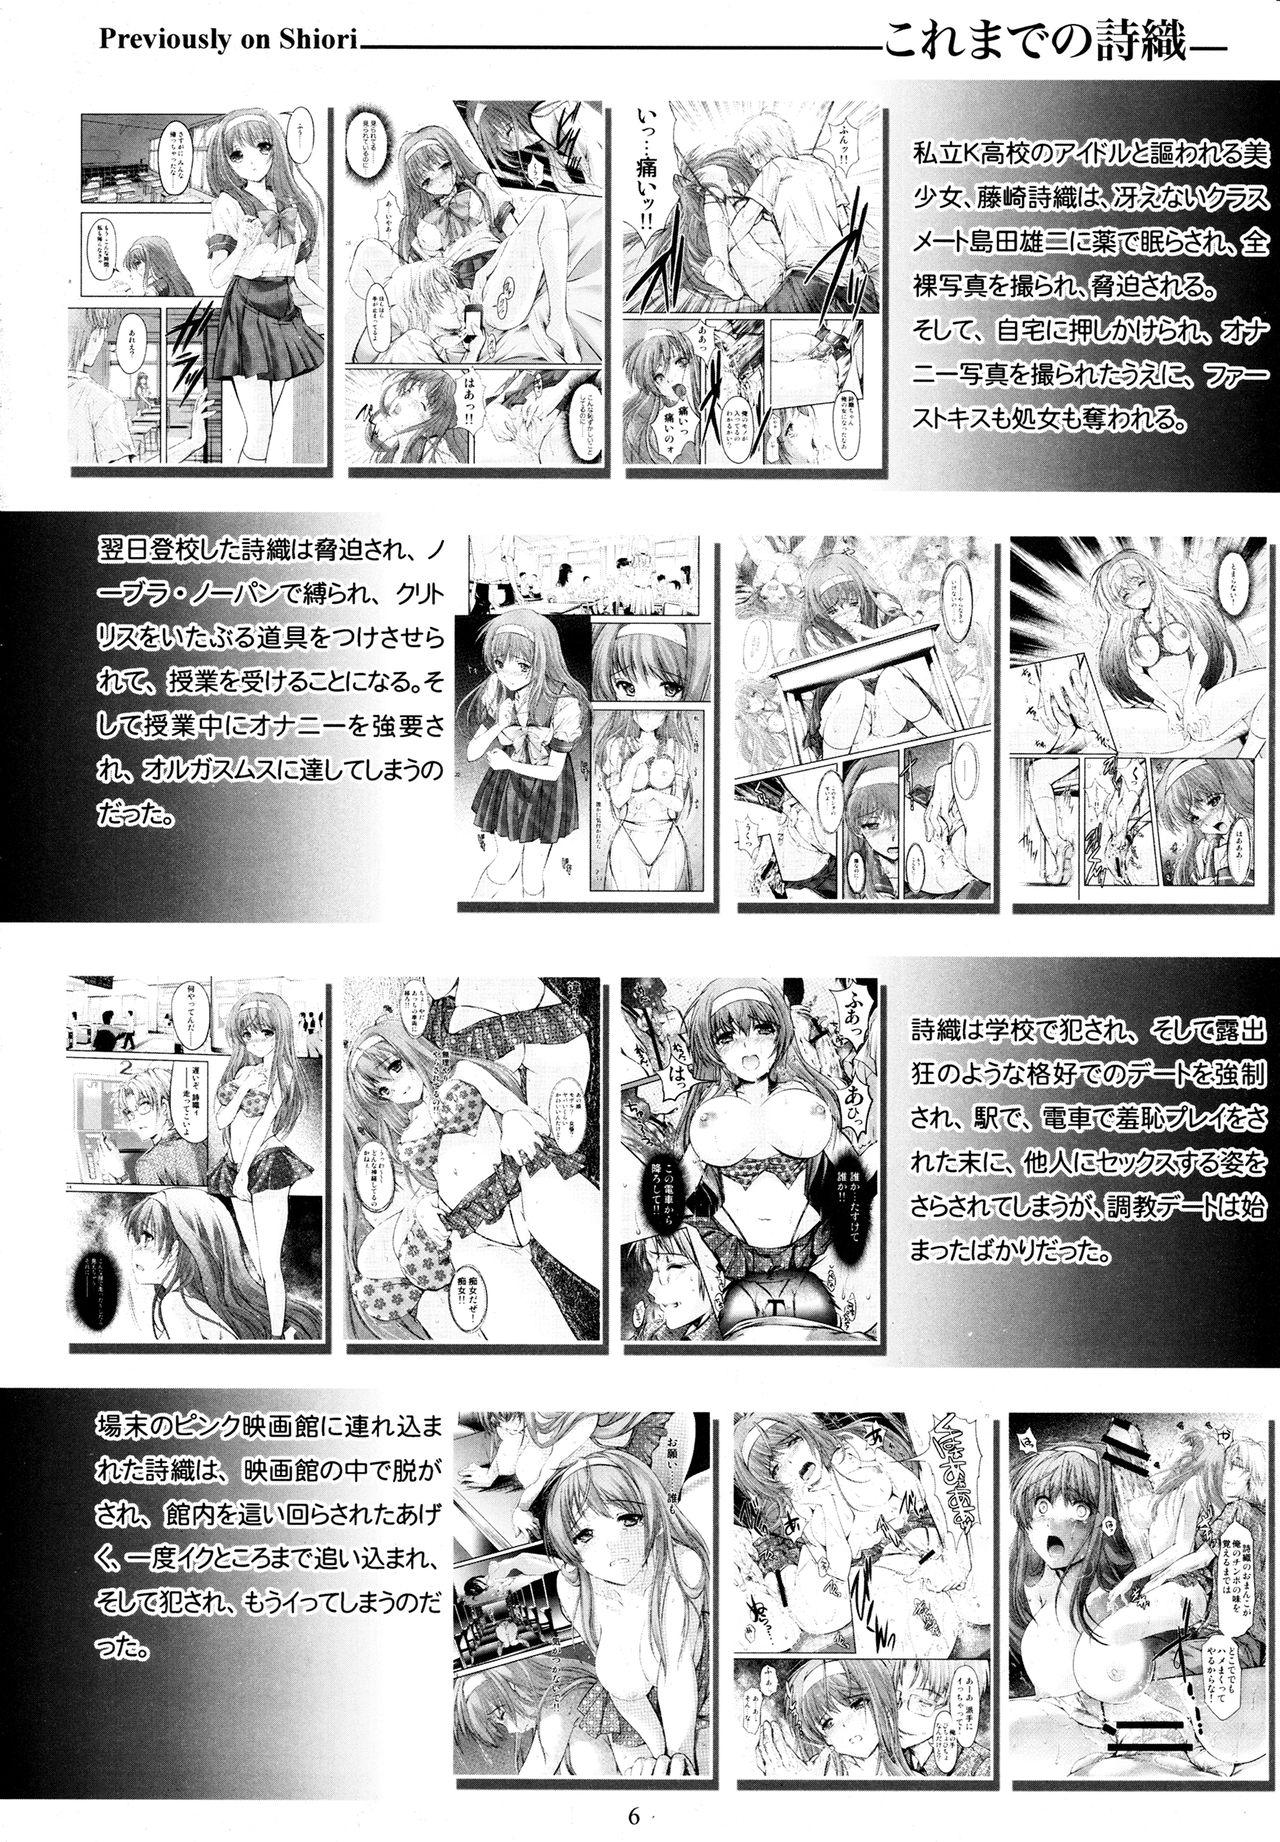 Chica (C89) [HIGH RISK REVOLUTION (Aizawa Hiroshi, Iwasaki Hiromasa)] Shiori Dai-San-Shou Yami no Kokuin Gekan - Shinsouban (Tokimeki Memorial) - Tokimeki memorial Tgirls - Page 5